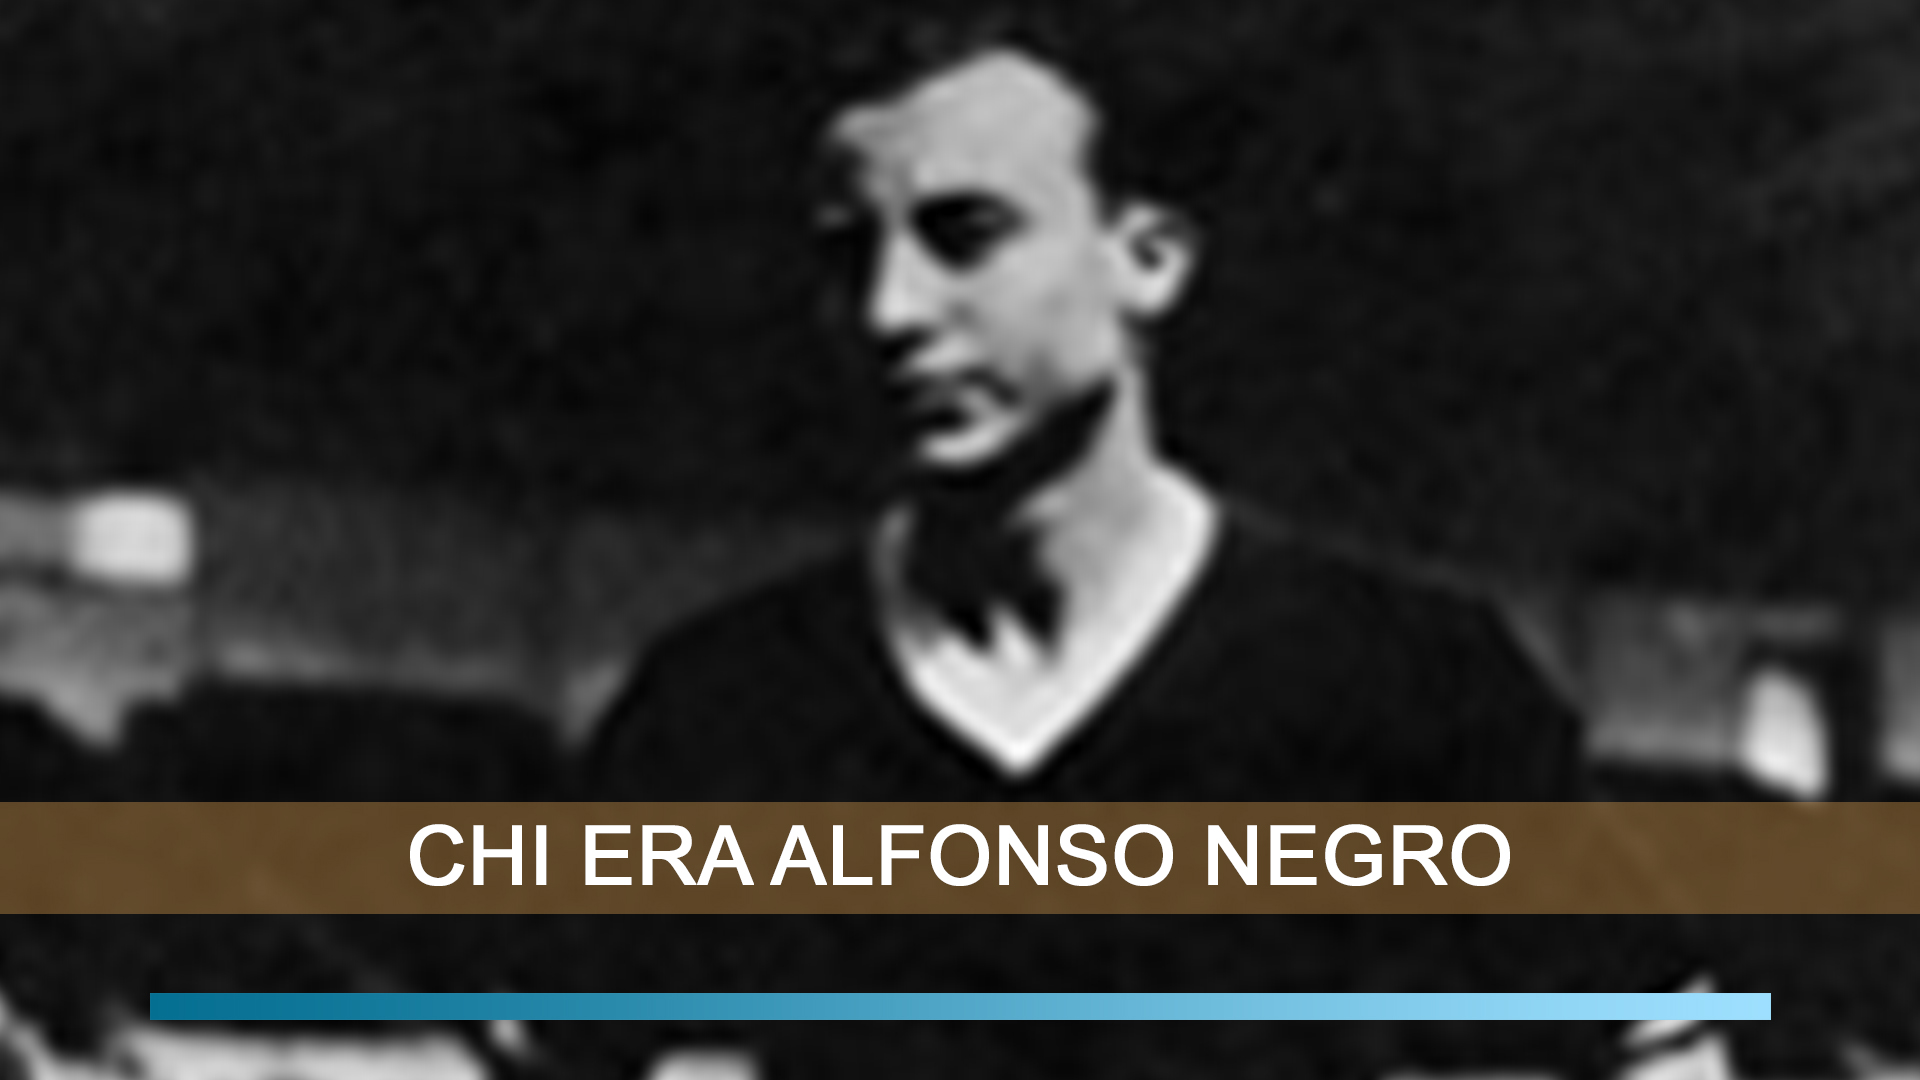 Alfonso Negro calciatore angrese oro alle olimpiadi di berlino 1936